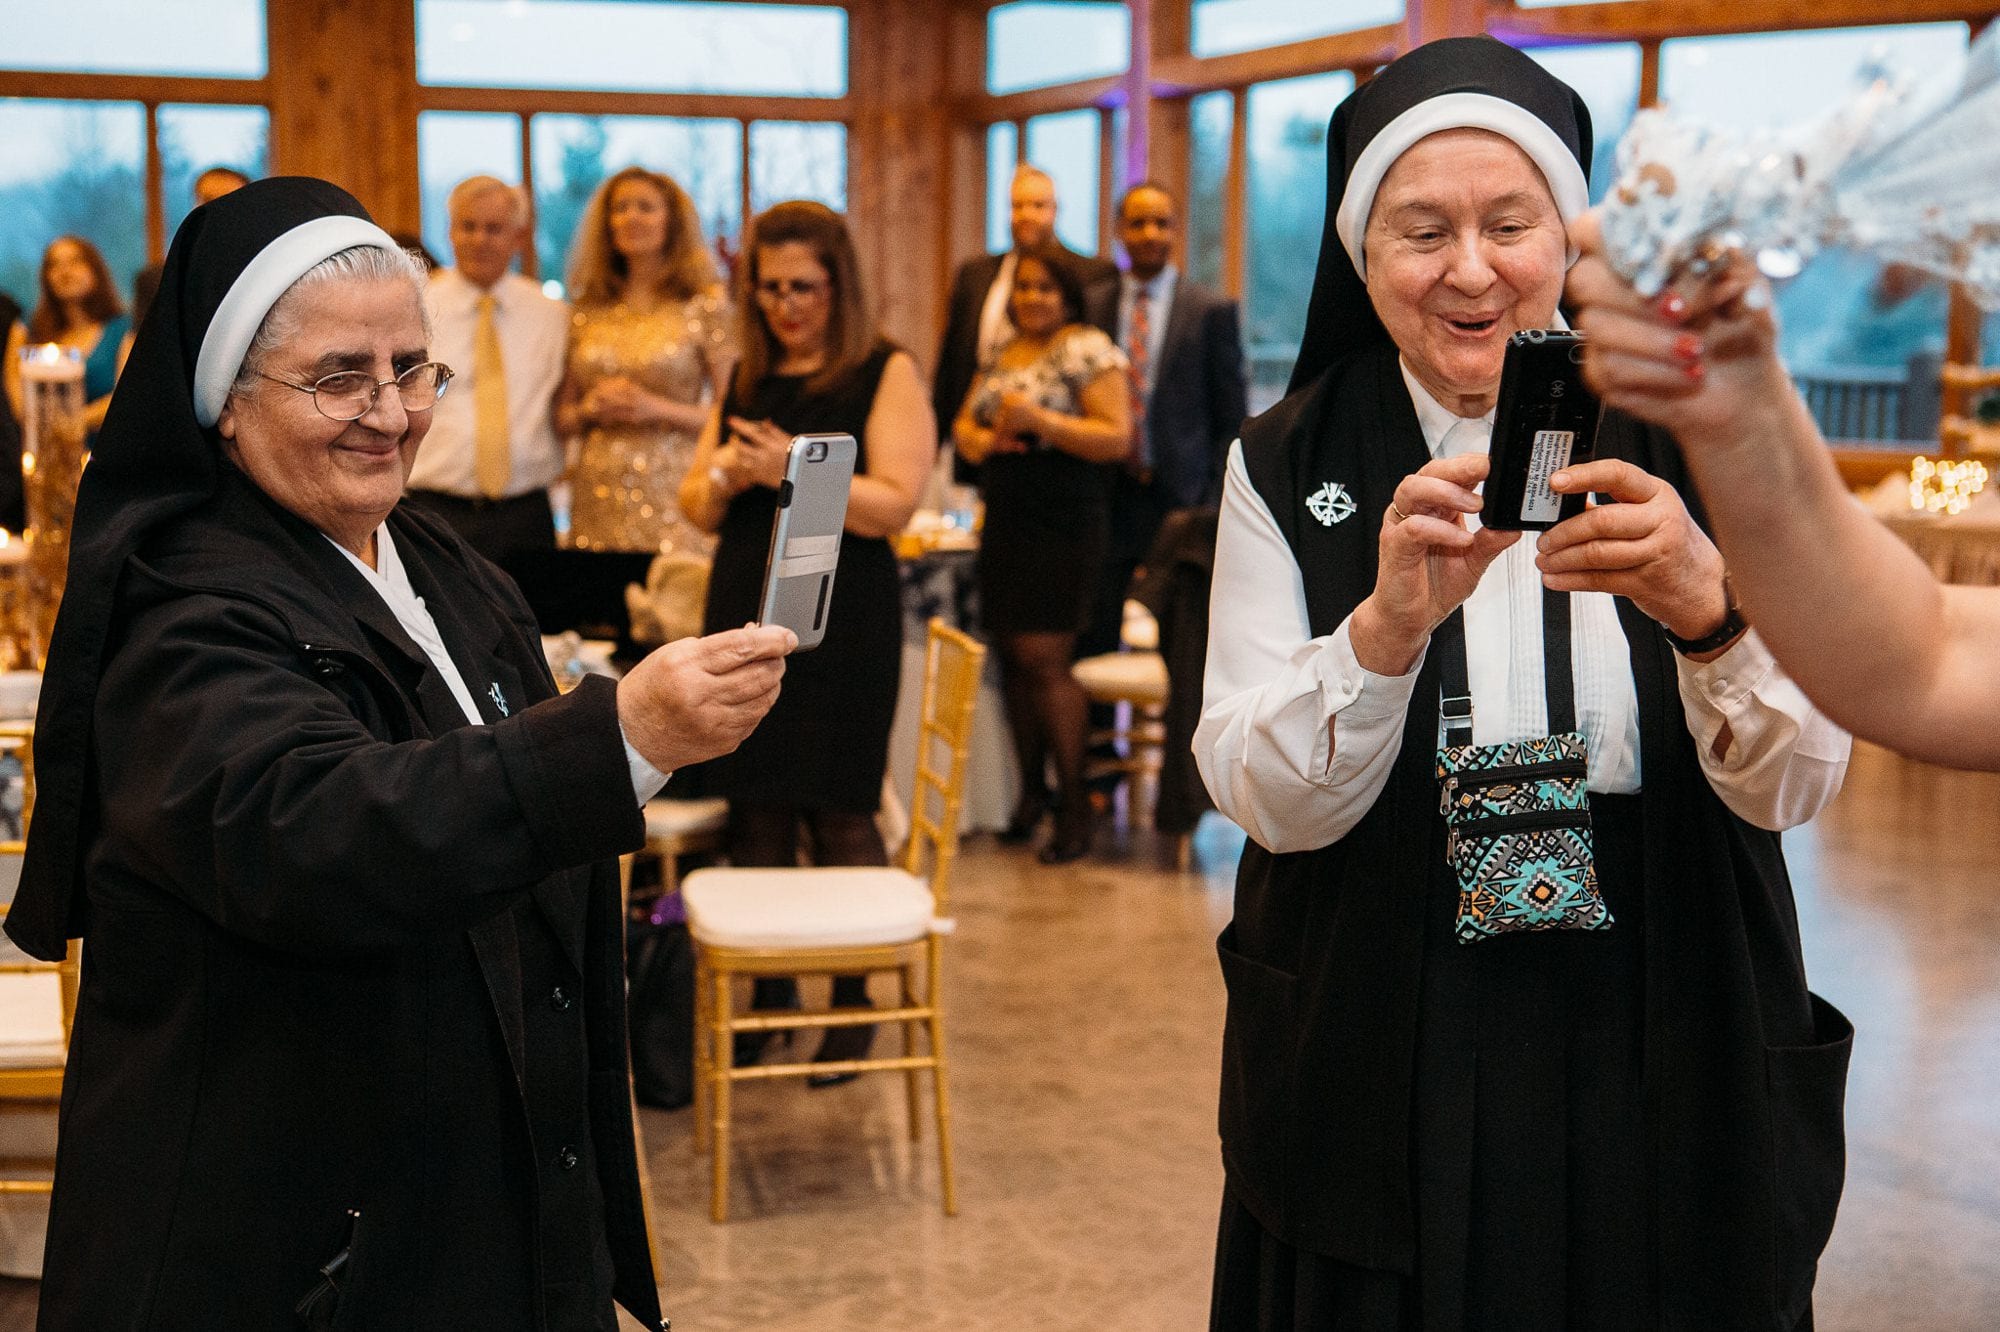 Two nuns recording bride dancing